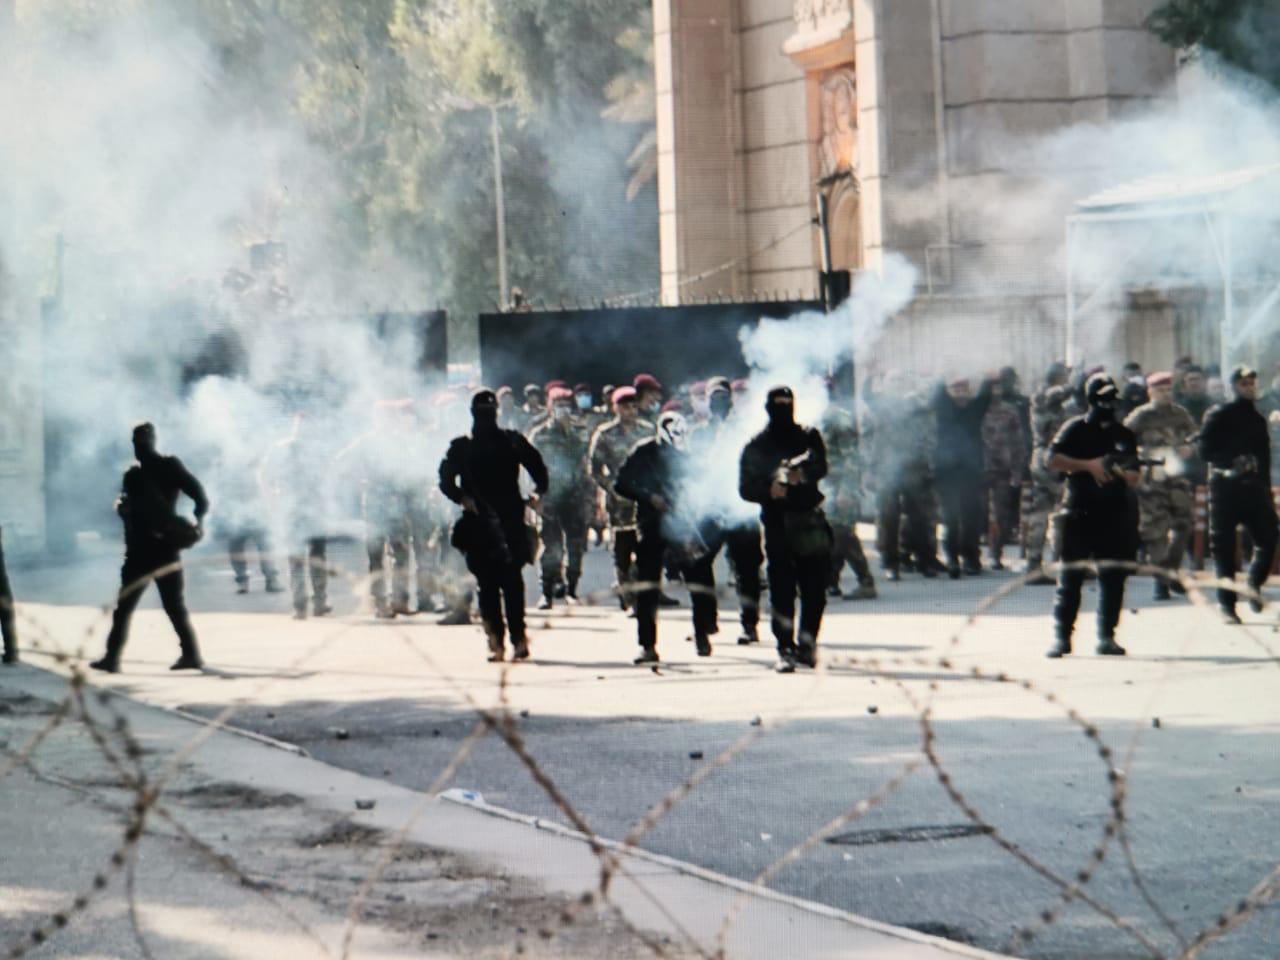 مفوضية حقوق الانسان: مقتل 74 متظاهرا وتضرر 90 مبنى حكومي وحزبي بثلاثة ايام